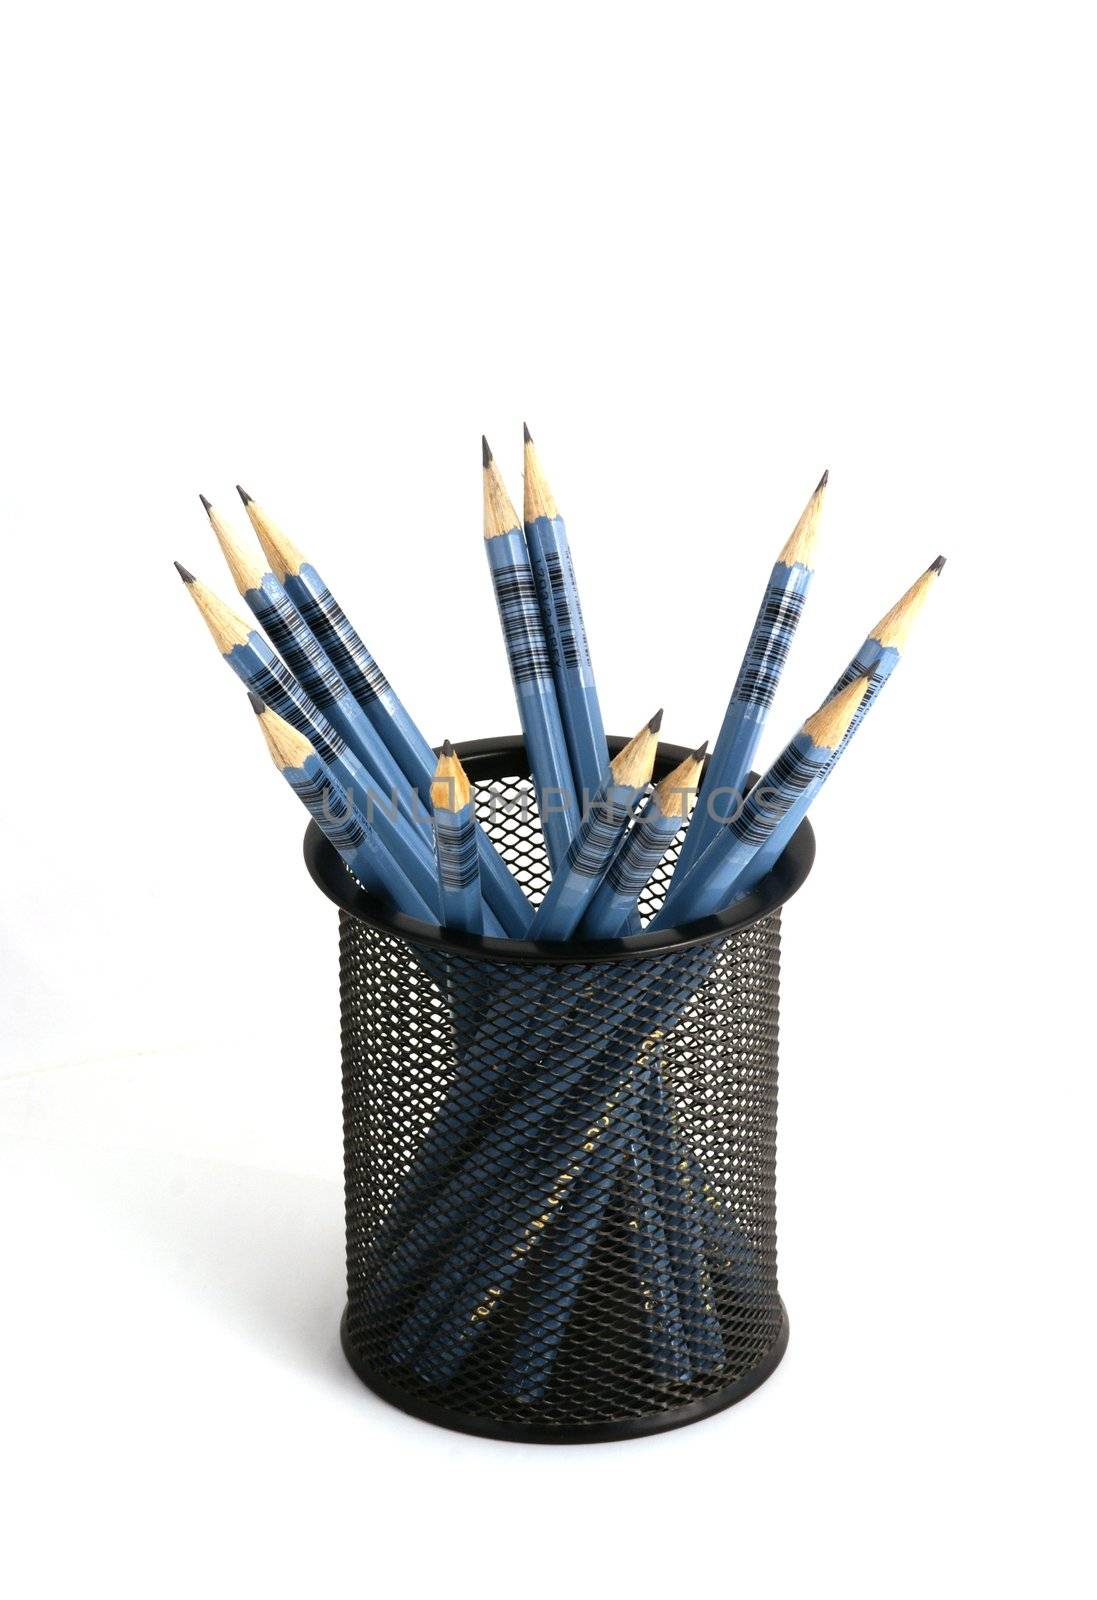 Wooden pens on pen holder by pmisak